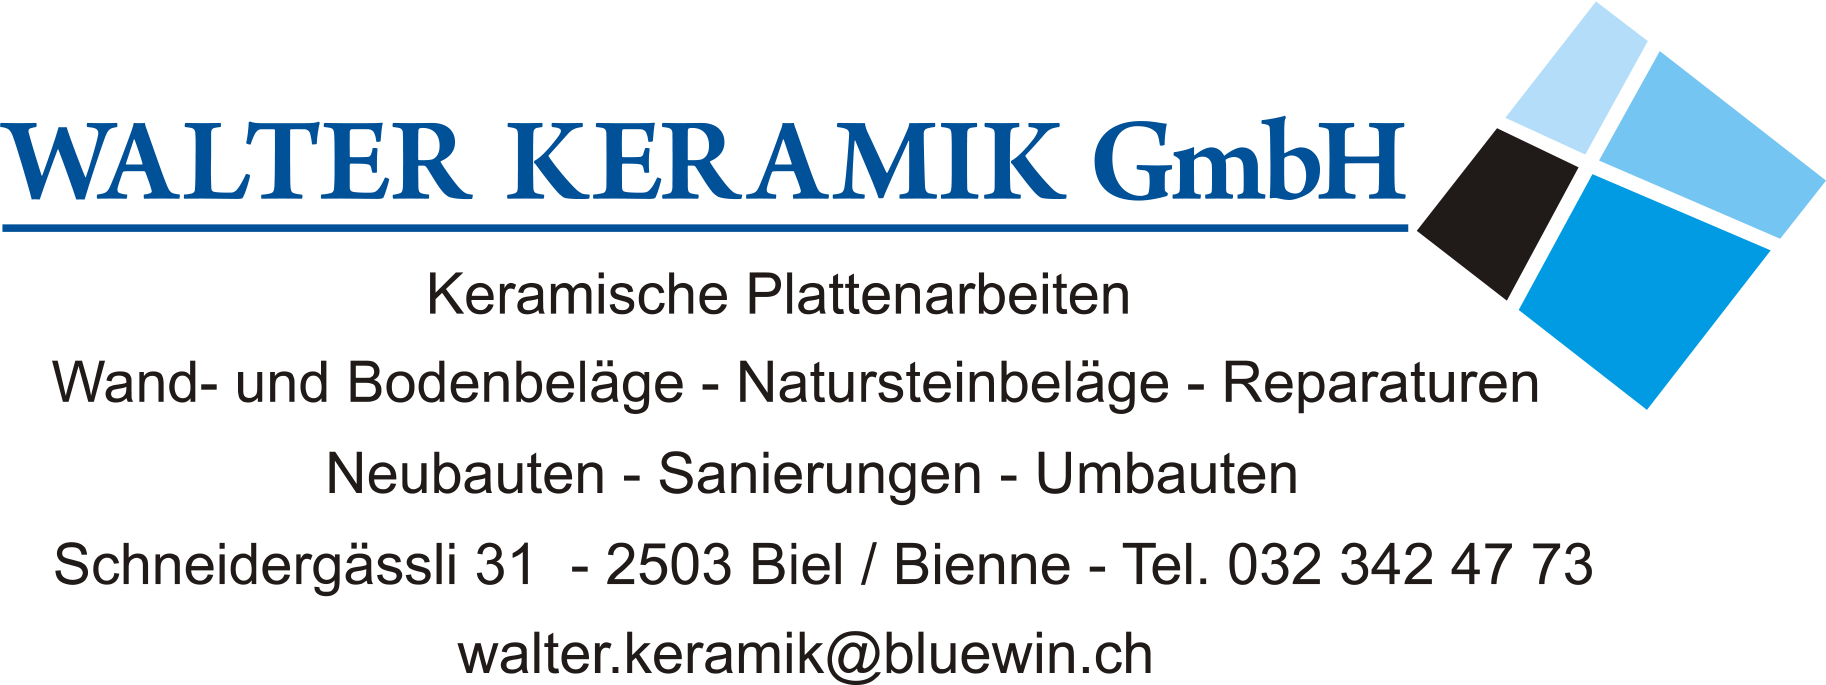 Walter Keramik GmbH